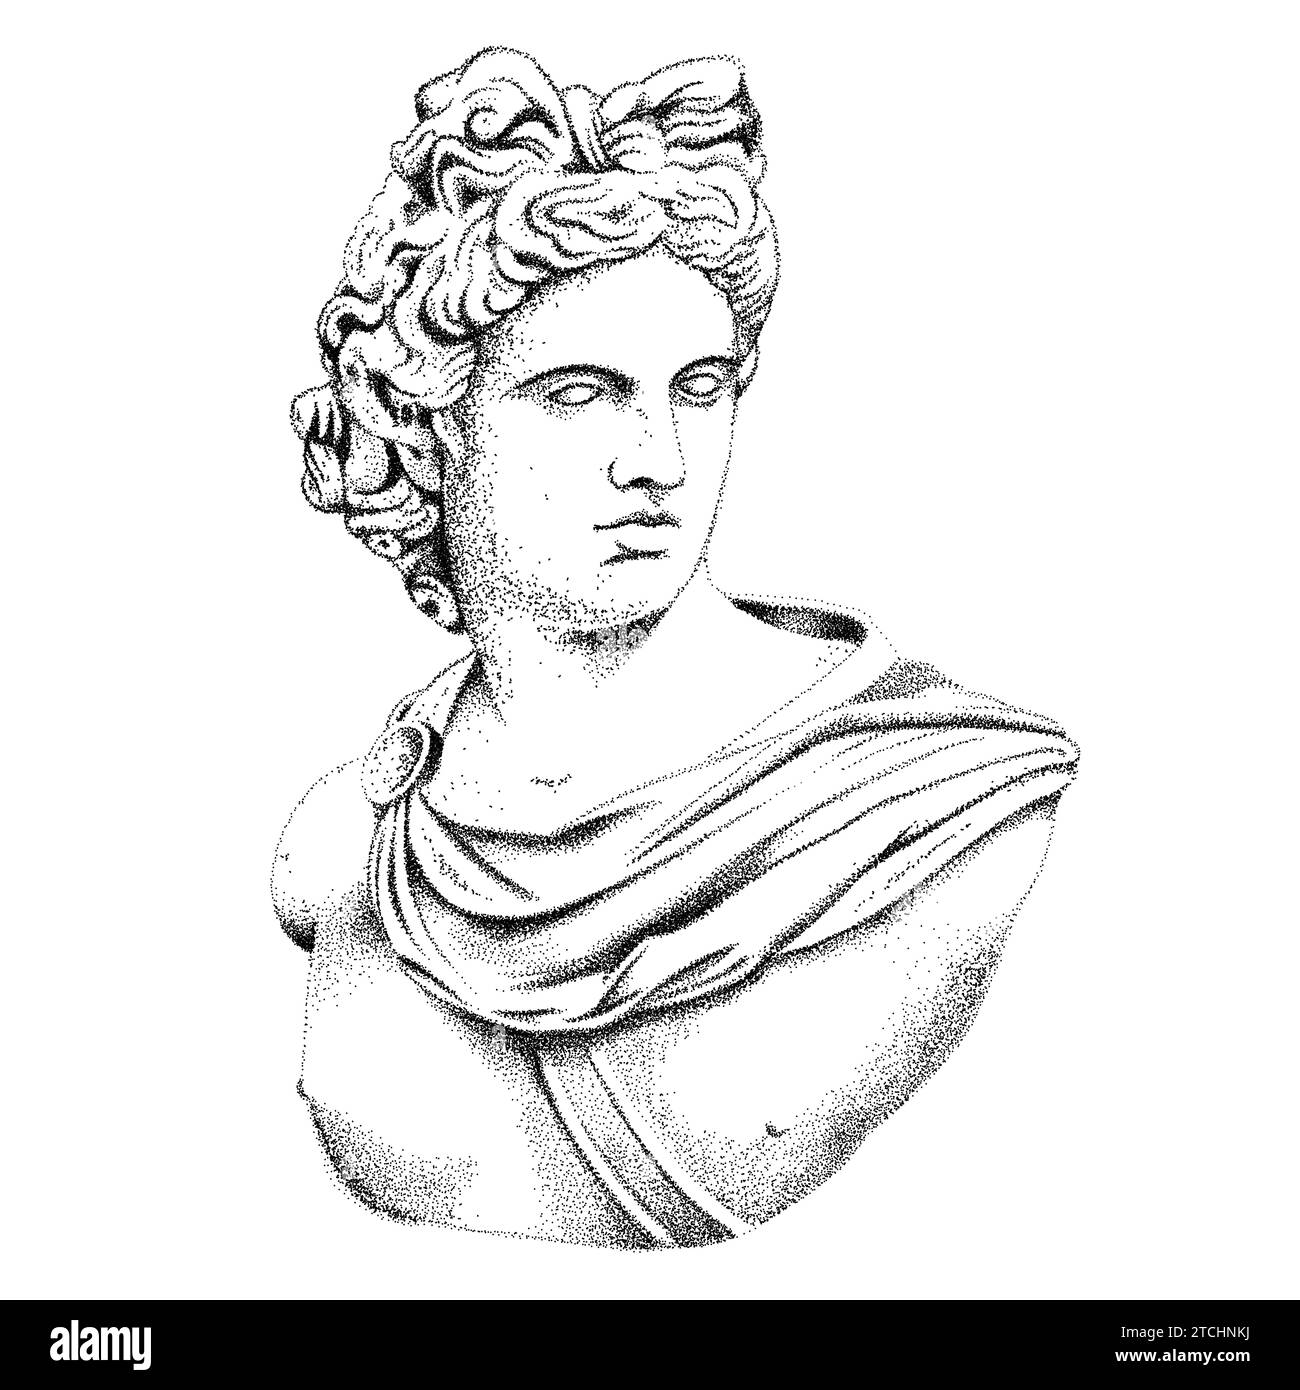 Busto dell'antico dio greco e romano Apollo. Illustrazione vettoriale punteggiata su sfondo bianco. Illustrazione Vettoriale